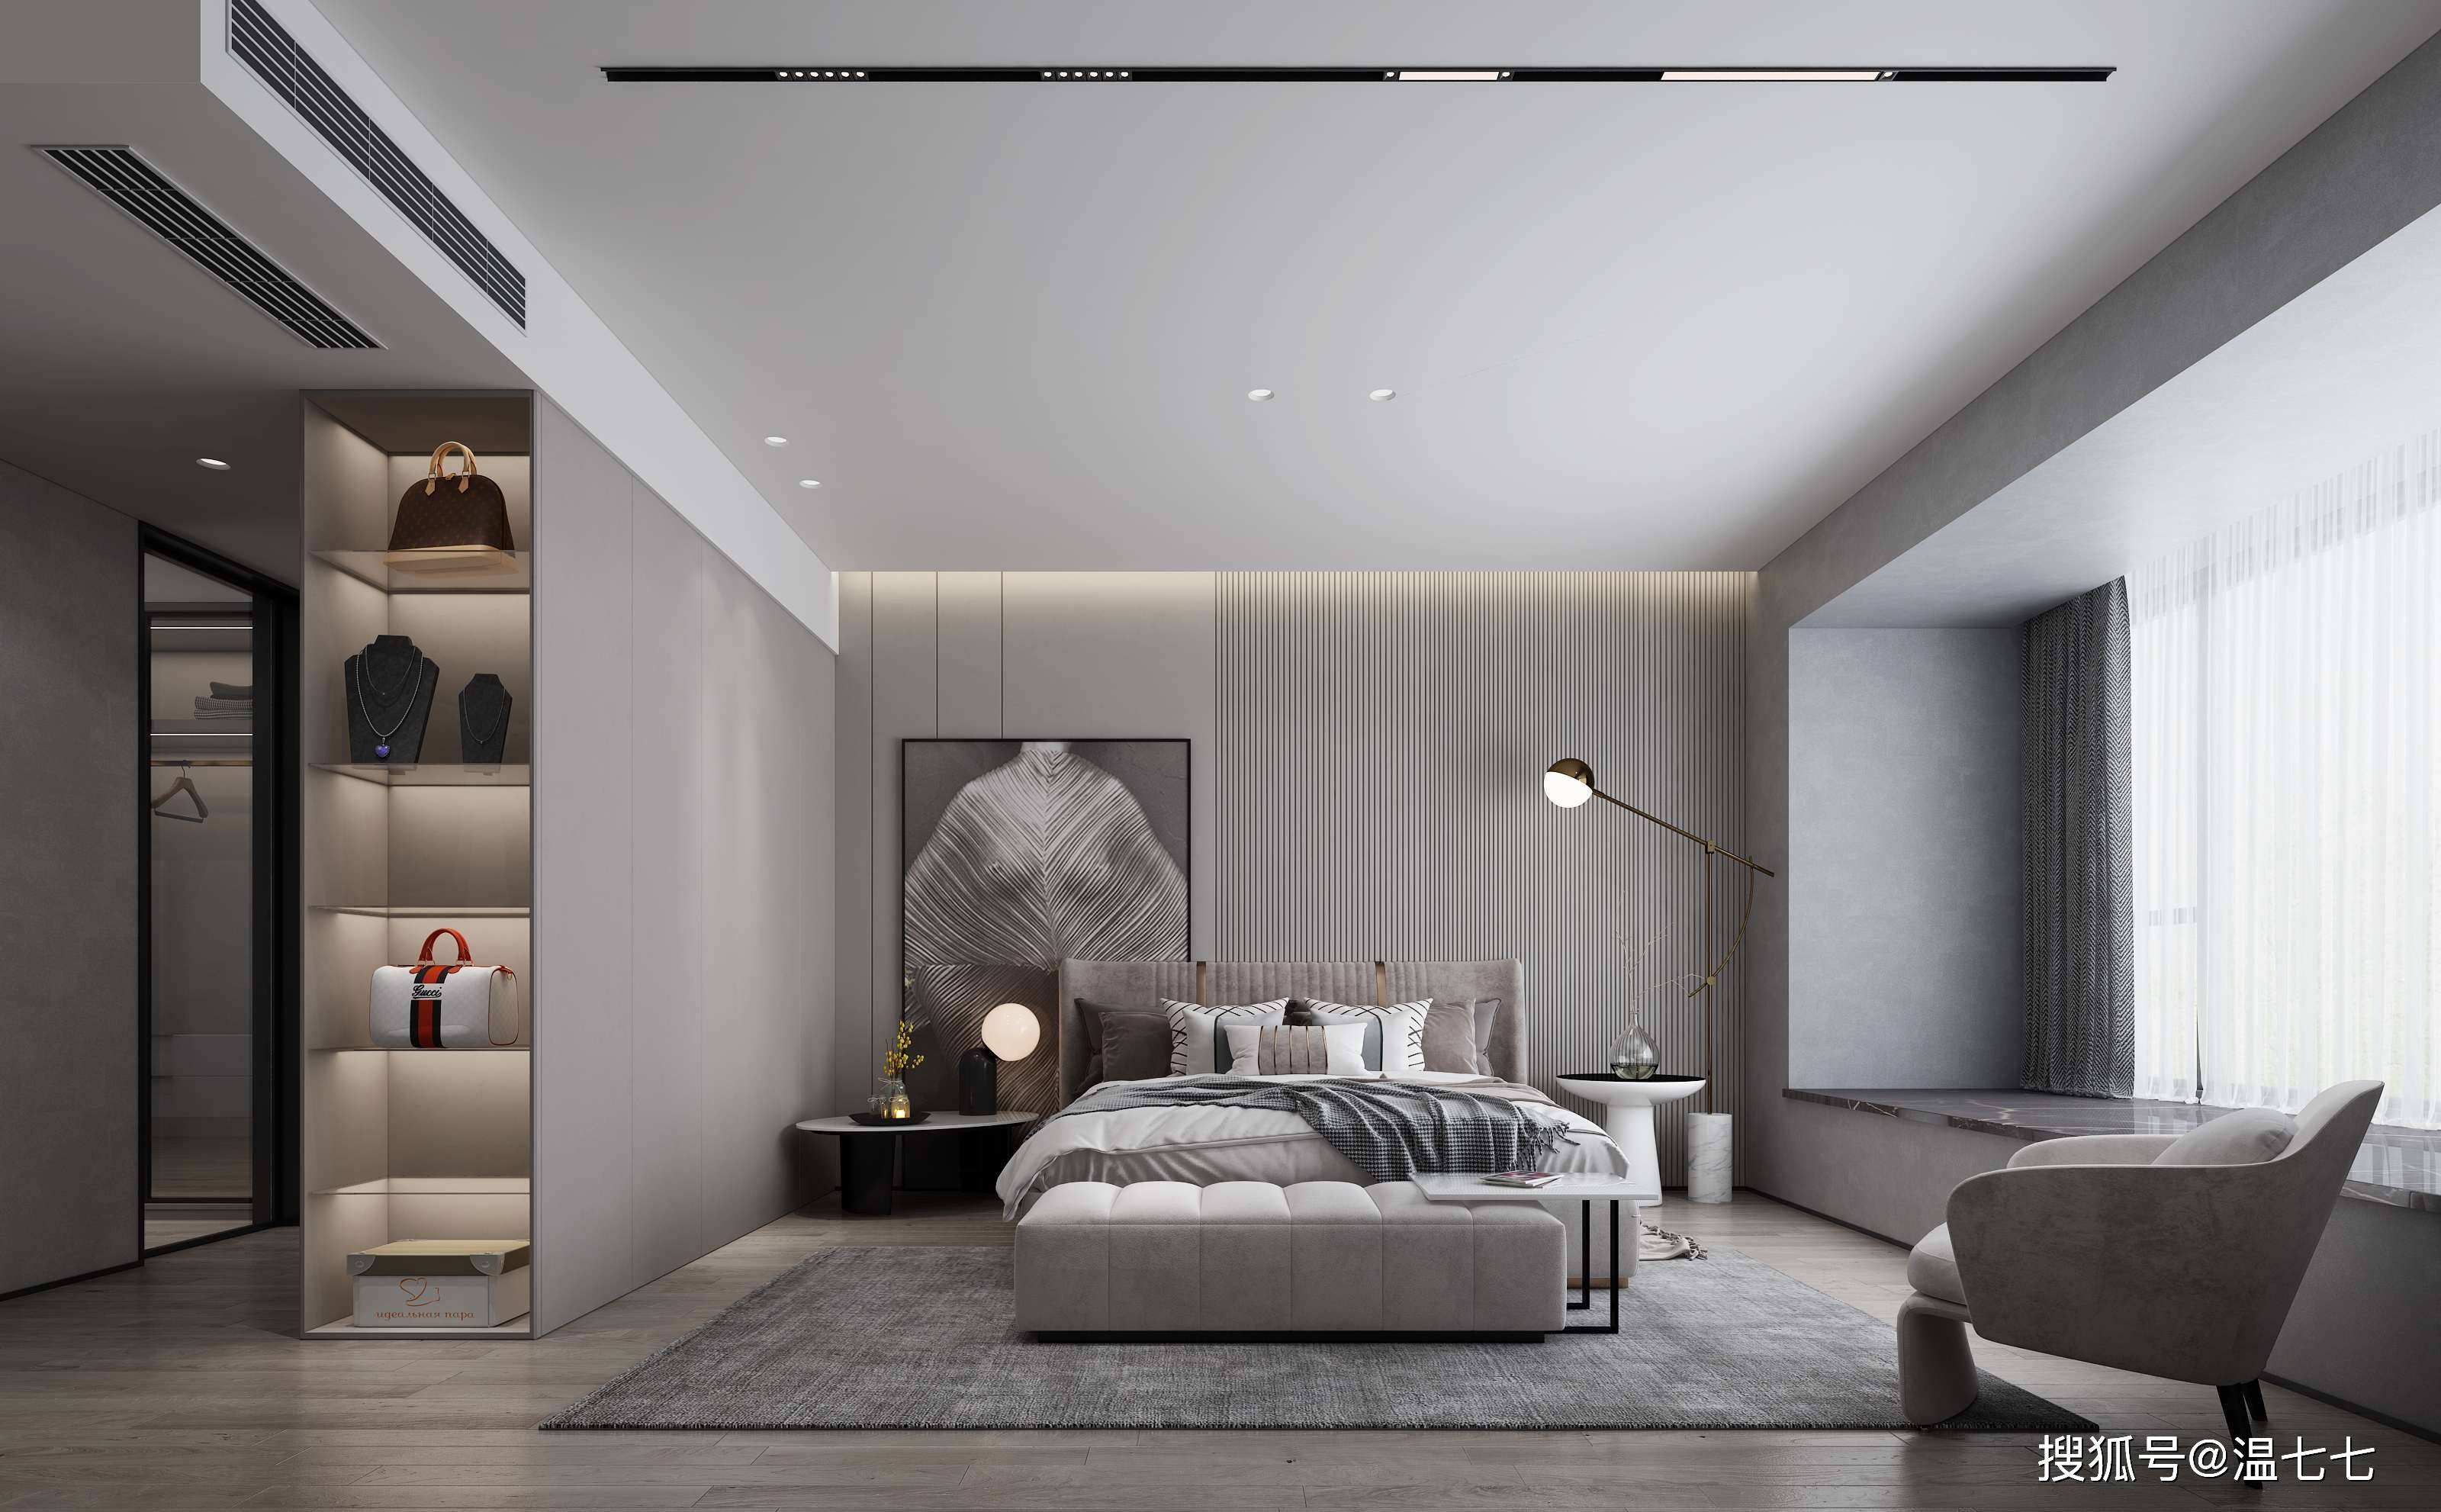 天花无主灯的设计,让卧室氛围更加舒适温馨,柔和的灯光有助于入眠.